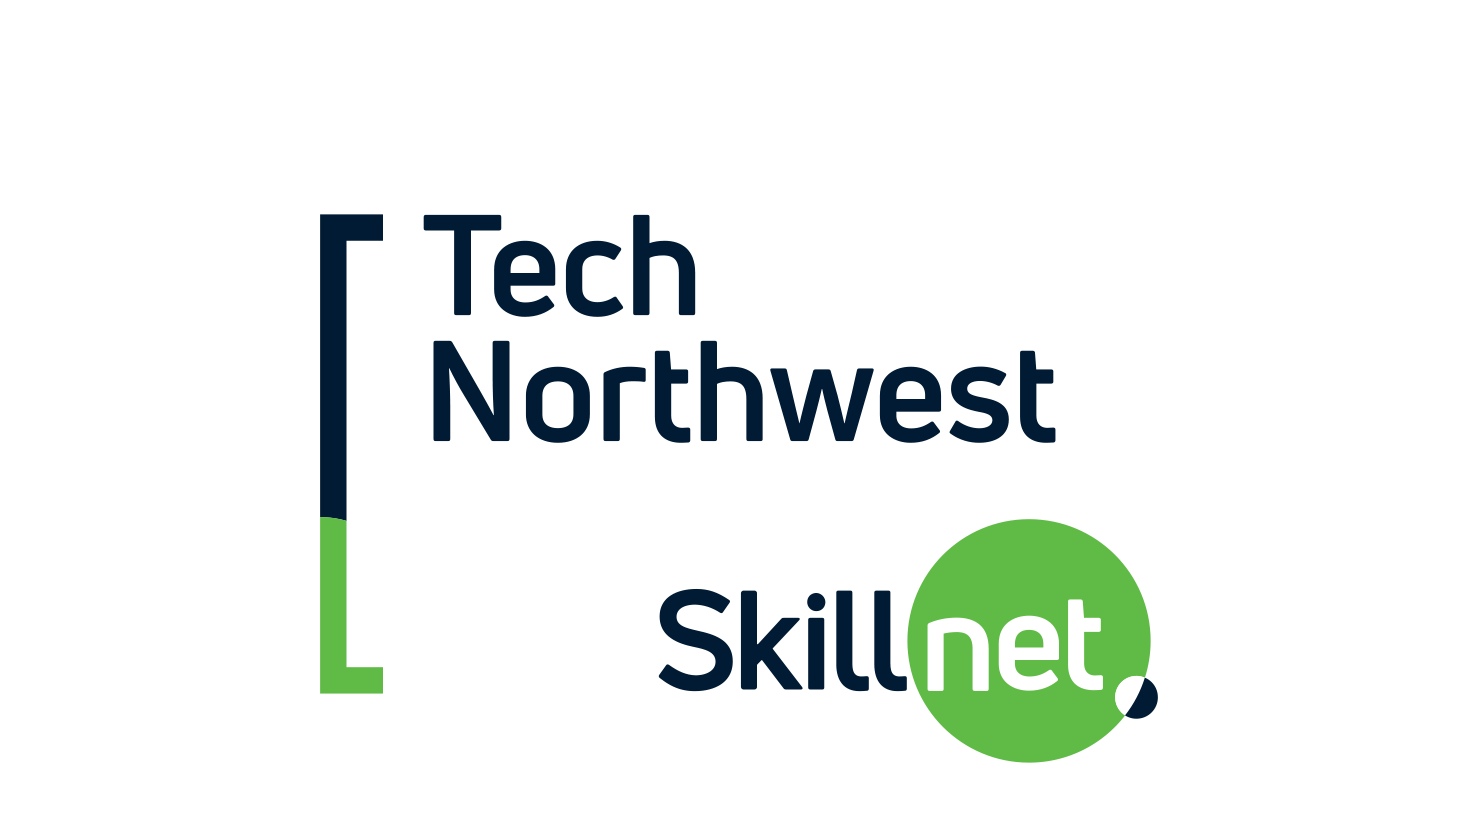 Tech Northwest Skillnet